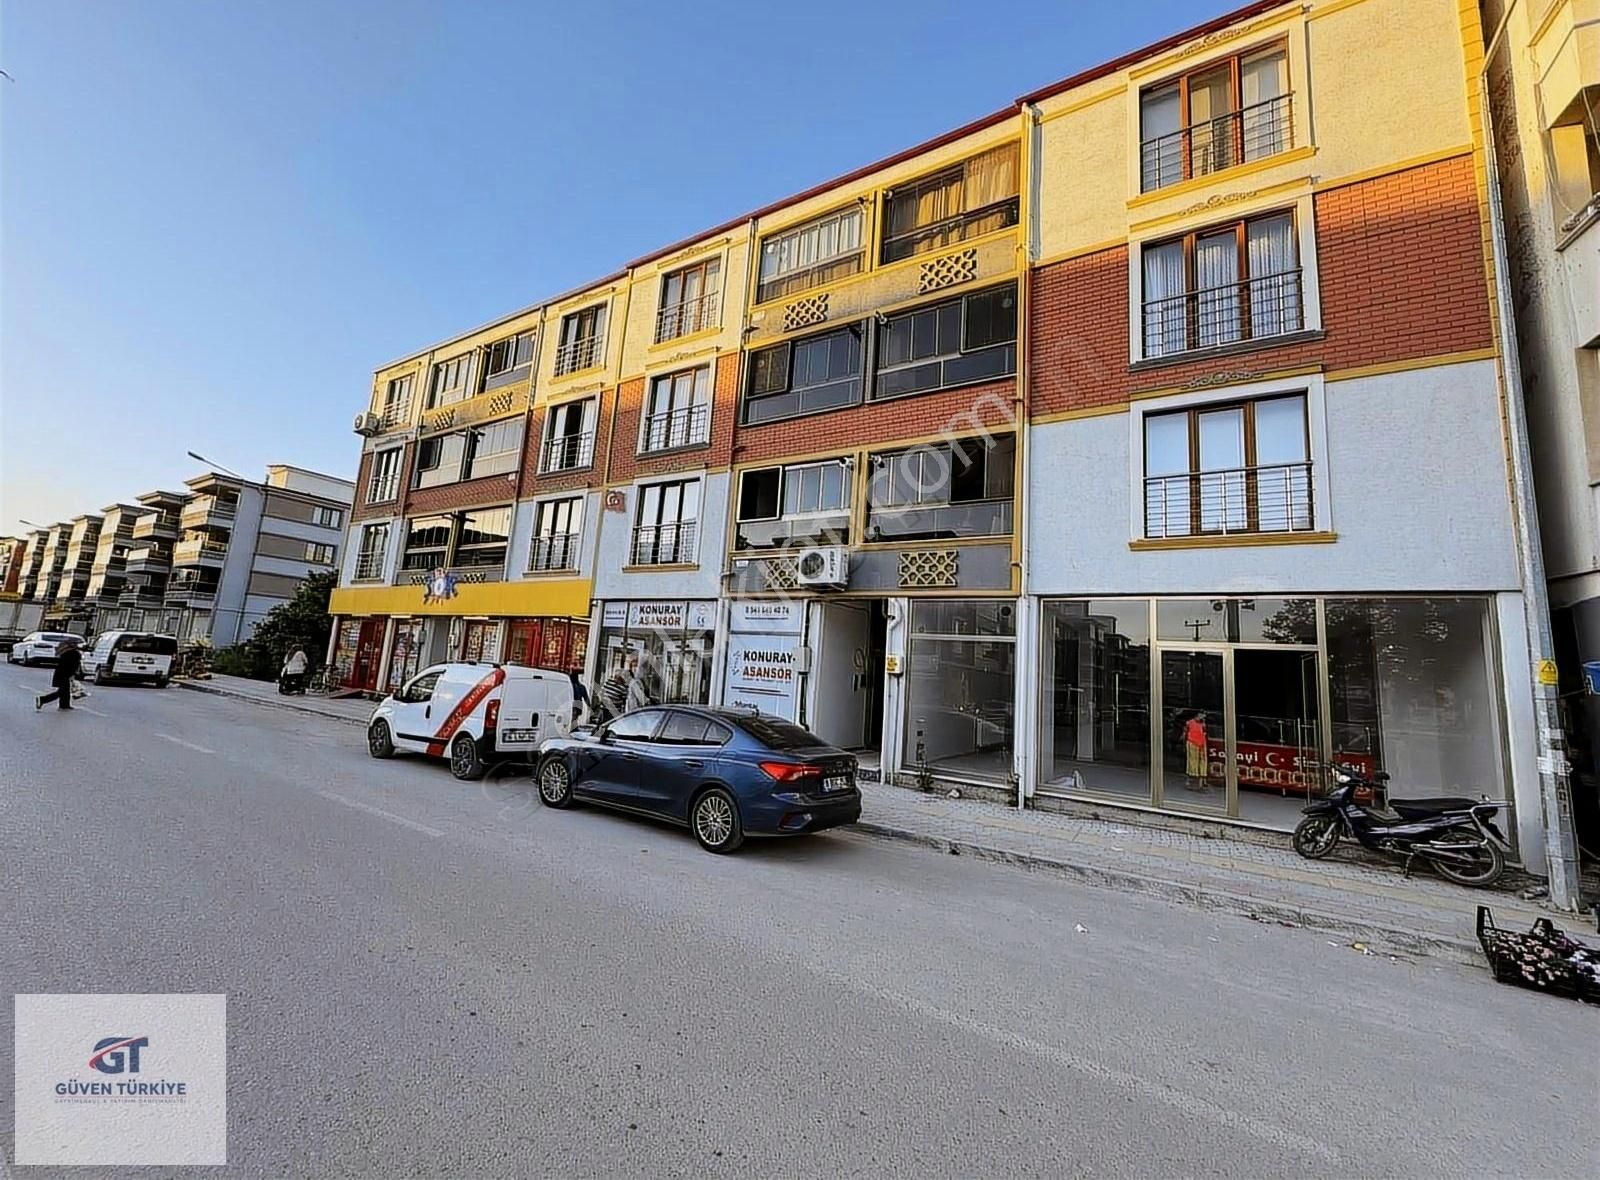 Mustafakemalpaşa Barış Satılık Dükkan & Mağaza Bankalar Caddesinde Kıymetli Mağaza